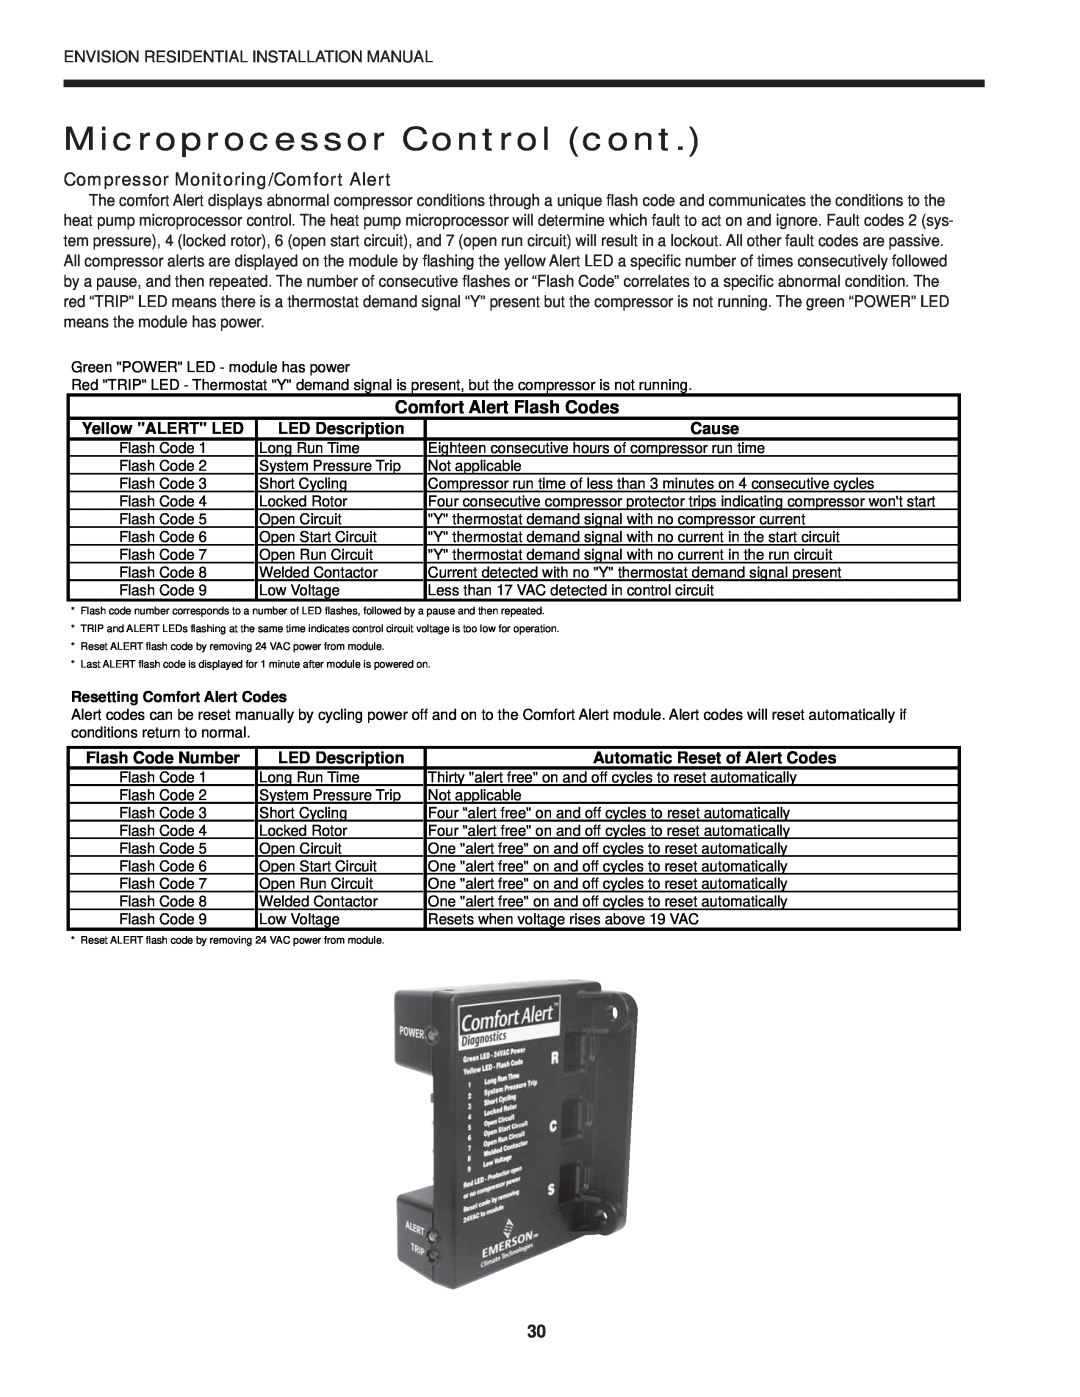 Envision Peripherals R-410A Microprocessor Control cont, Compressor Monitoring/Comfort Alert, Comfort Alert Flash Codes 